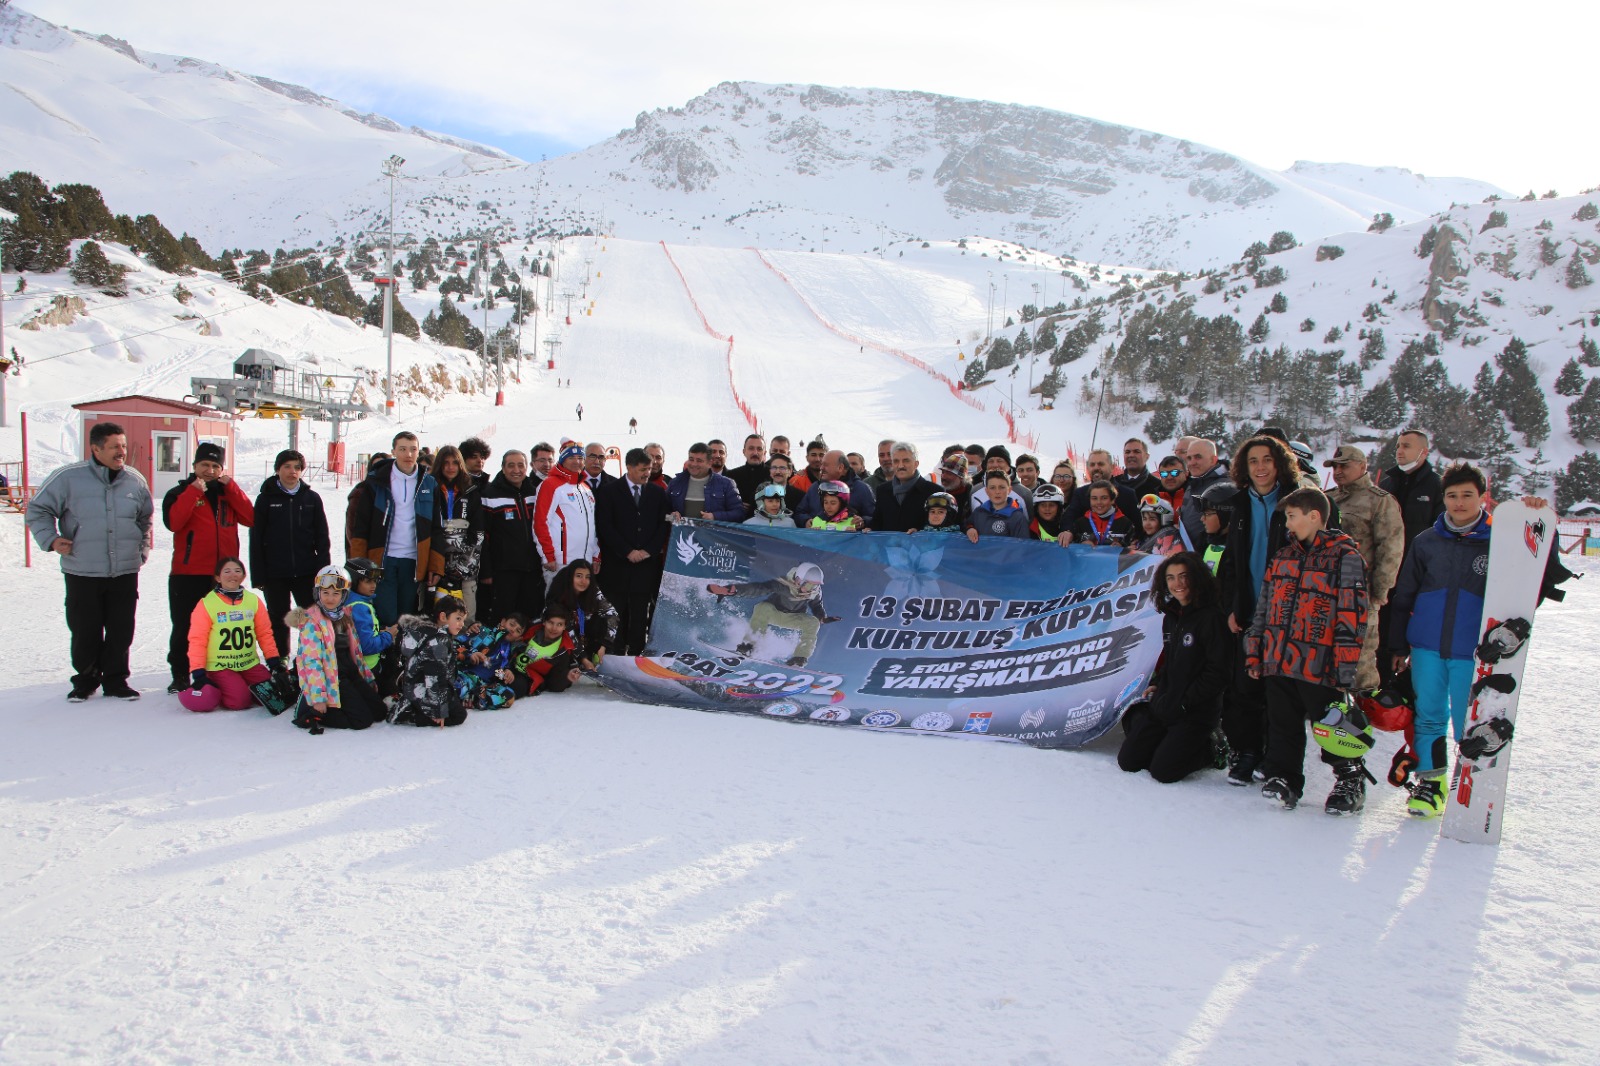 13 Şubat Erzincan Kurtuluş Kupası Snowboard Yarışmalarında Dereceye Giren Sporcular İçin Ödül Töreni Düzenlendi.